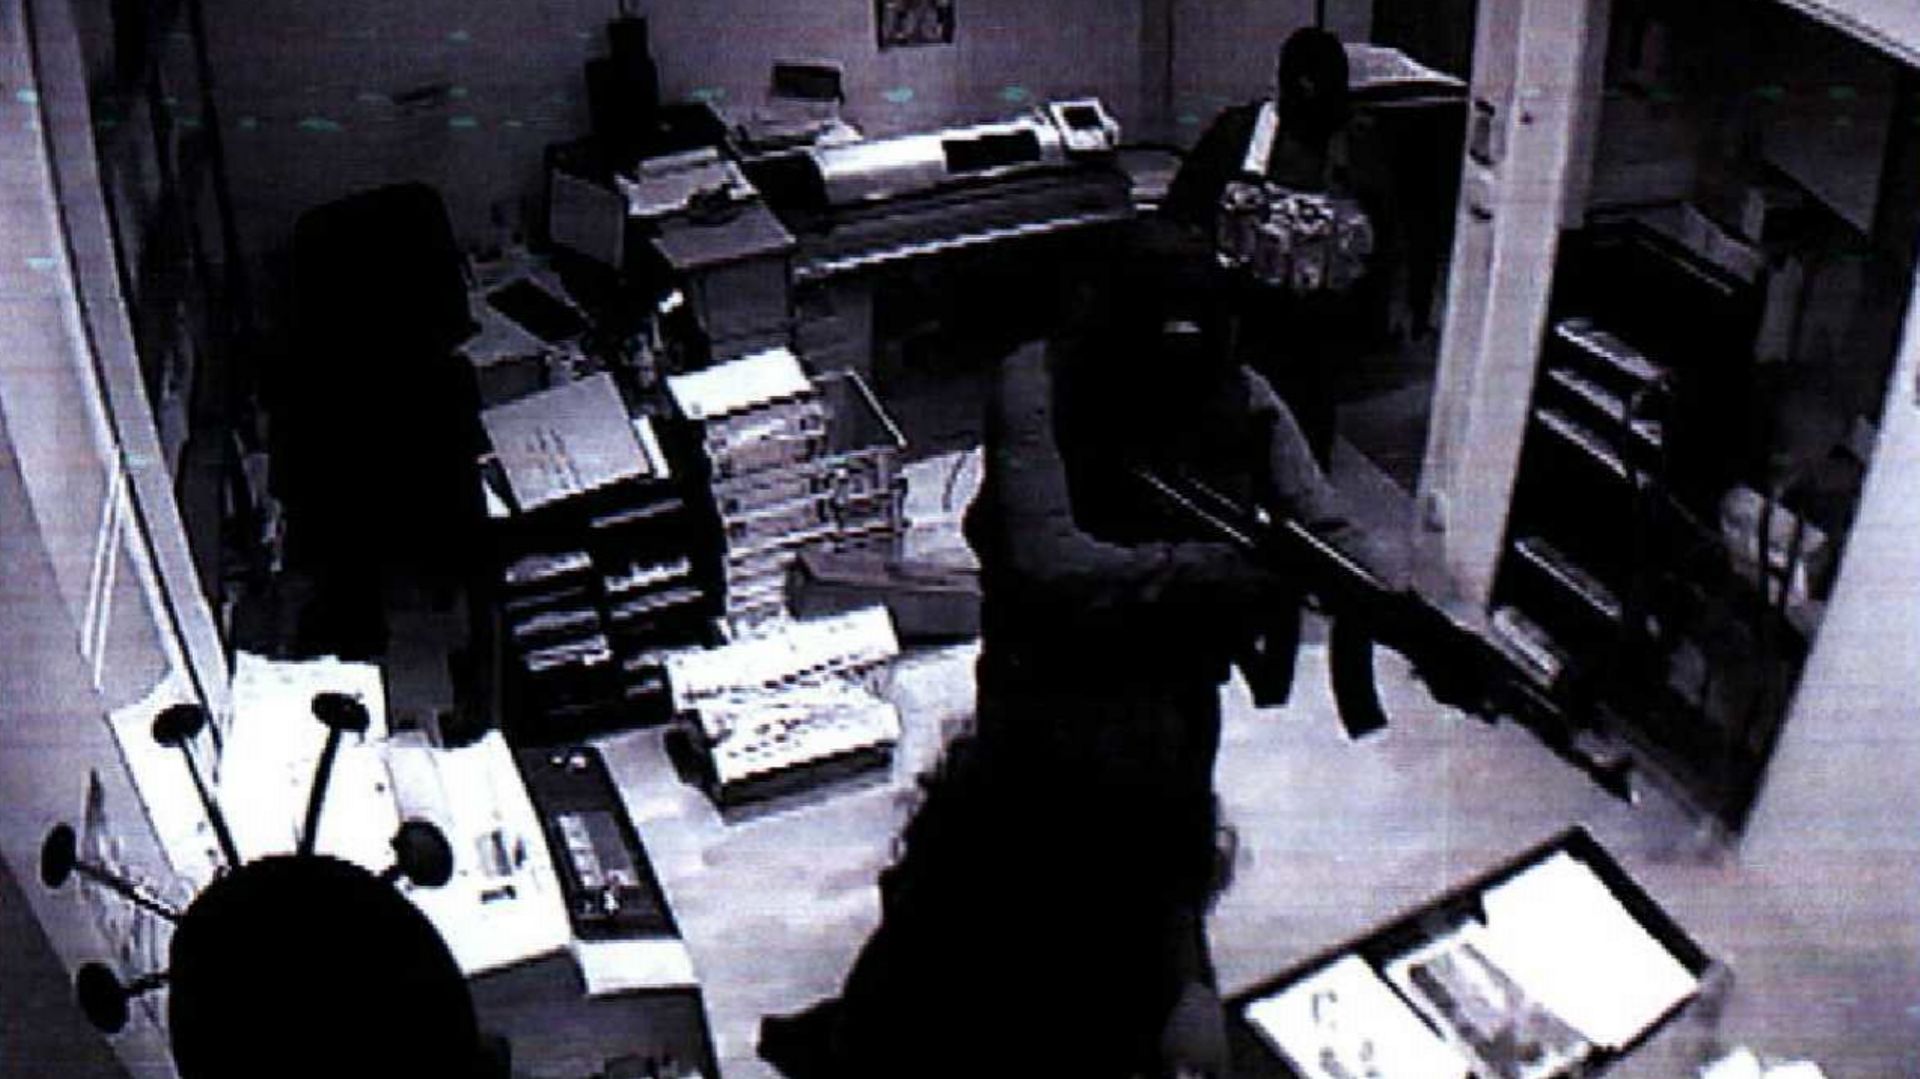 La caméra de vidéosurveillance capture les images de l’entrée des frères Kouachi dans la rédaction de Charlie Hebdo.